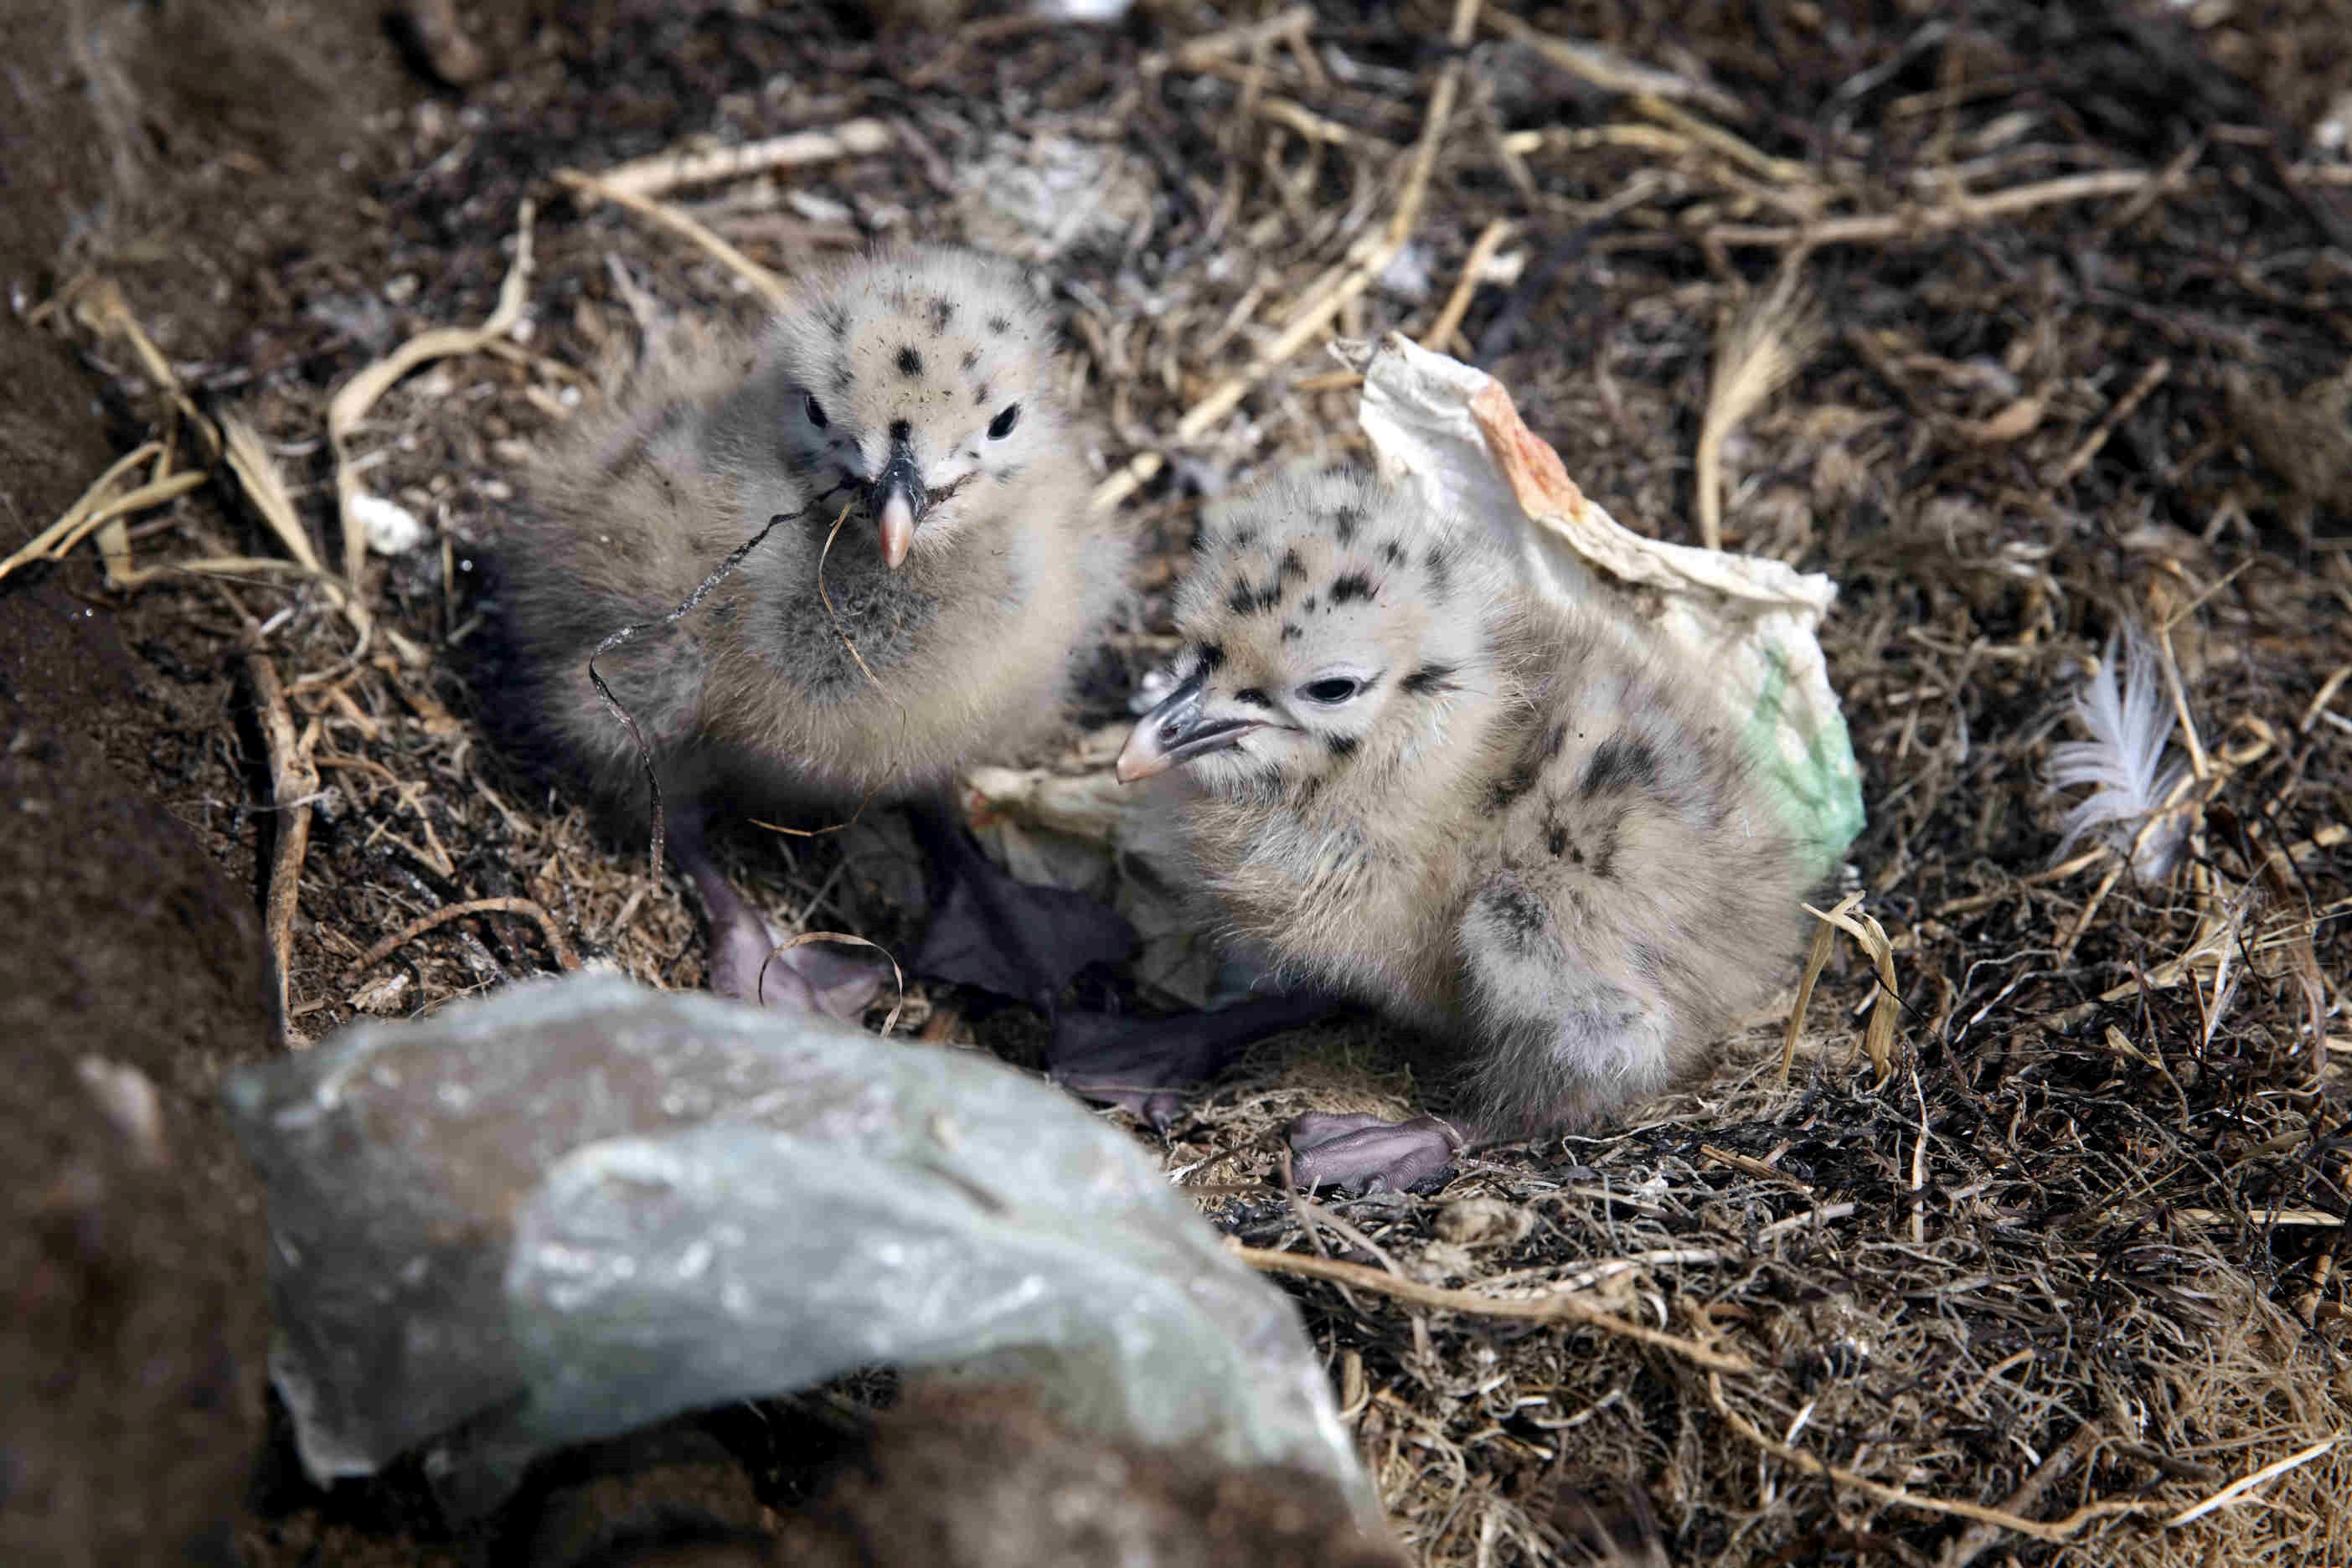 Jeunes poussins de goéland dans leur nid avec des déchets (P. Landemann 2019)